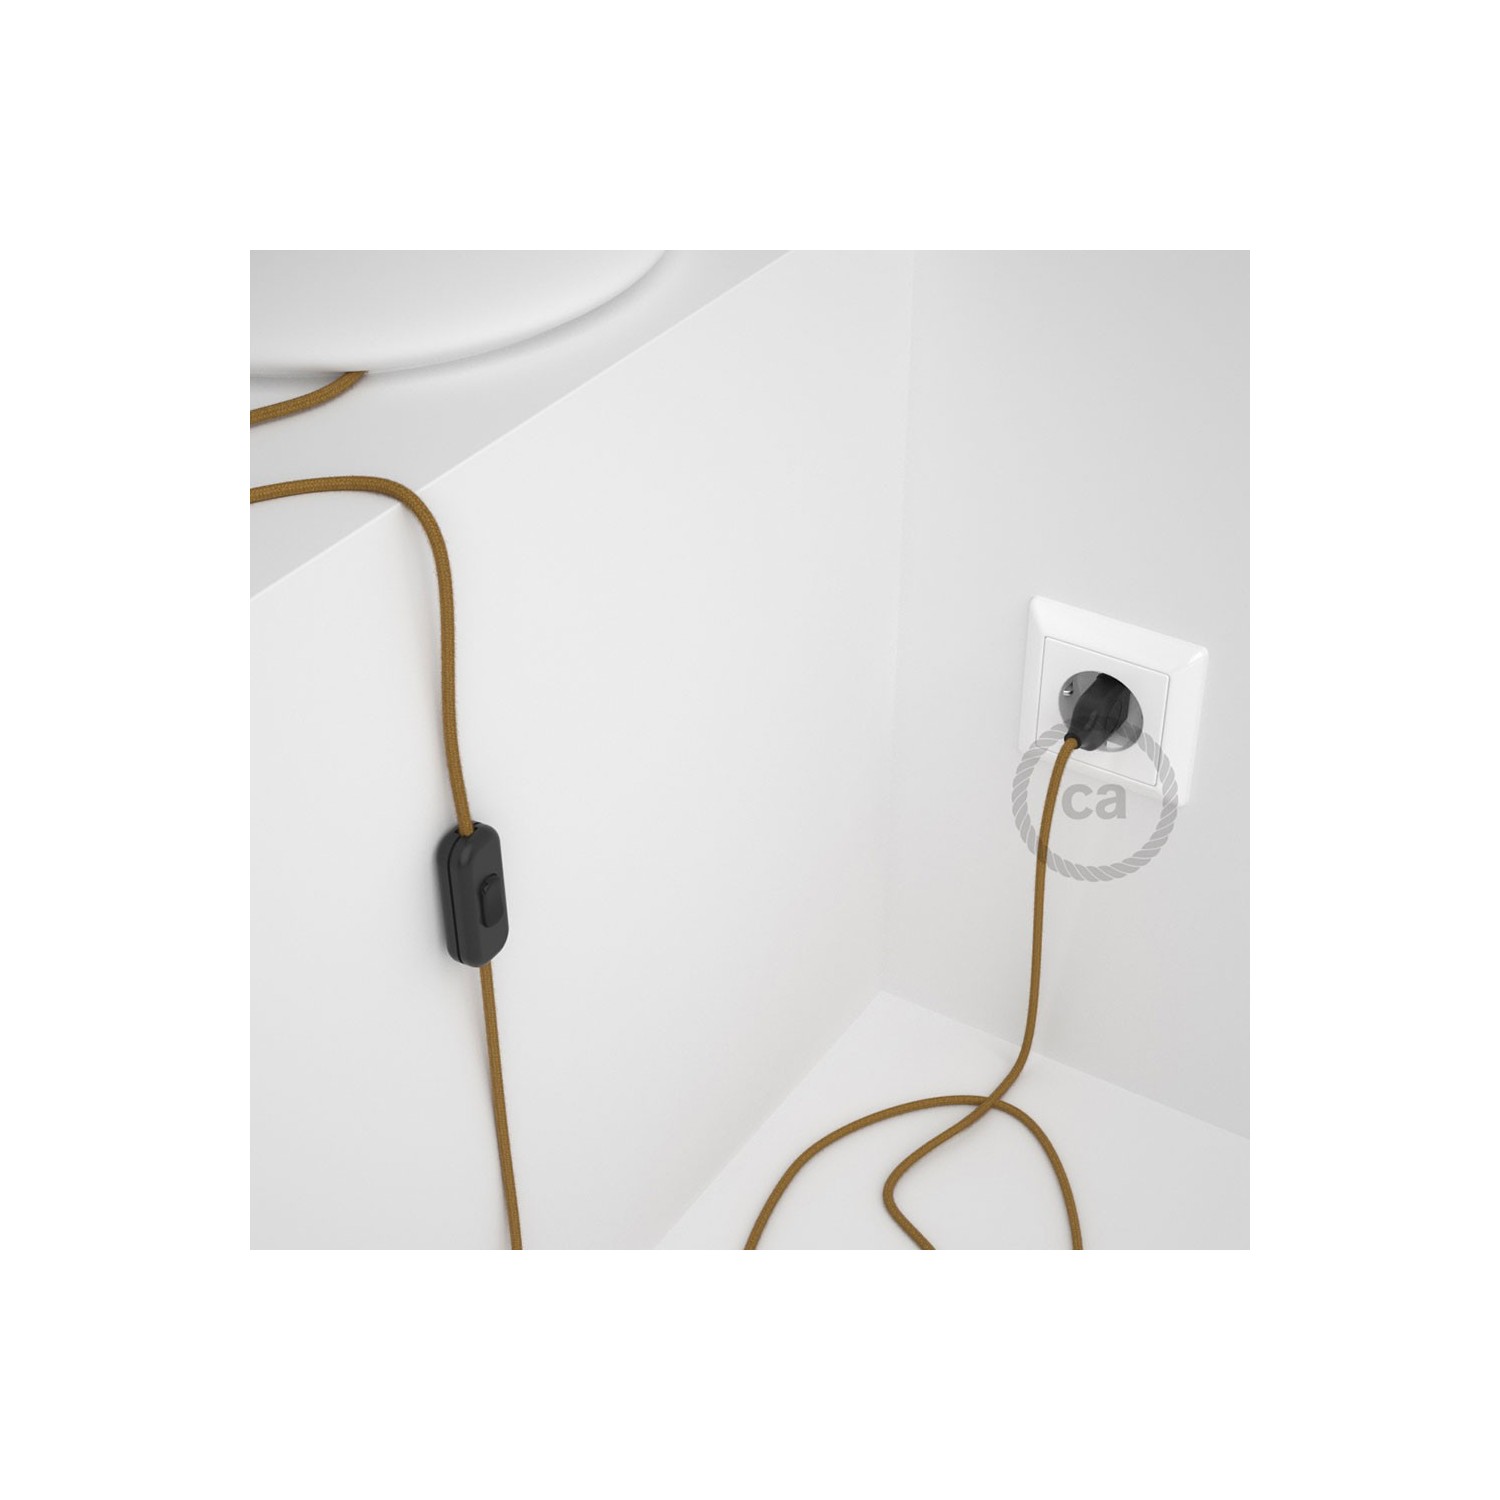 Napájecí kabel pro stolní lampu, RC31 Medový bavlněný 1,80 m. Vyberte si barvu zástrčky a vypínače.